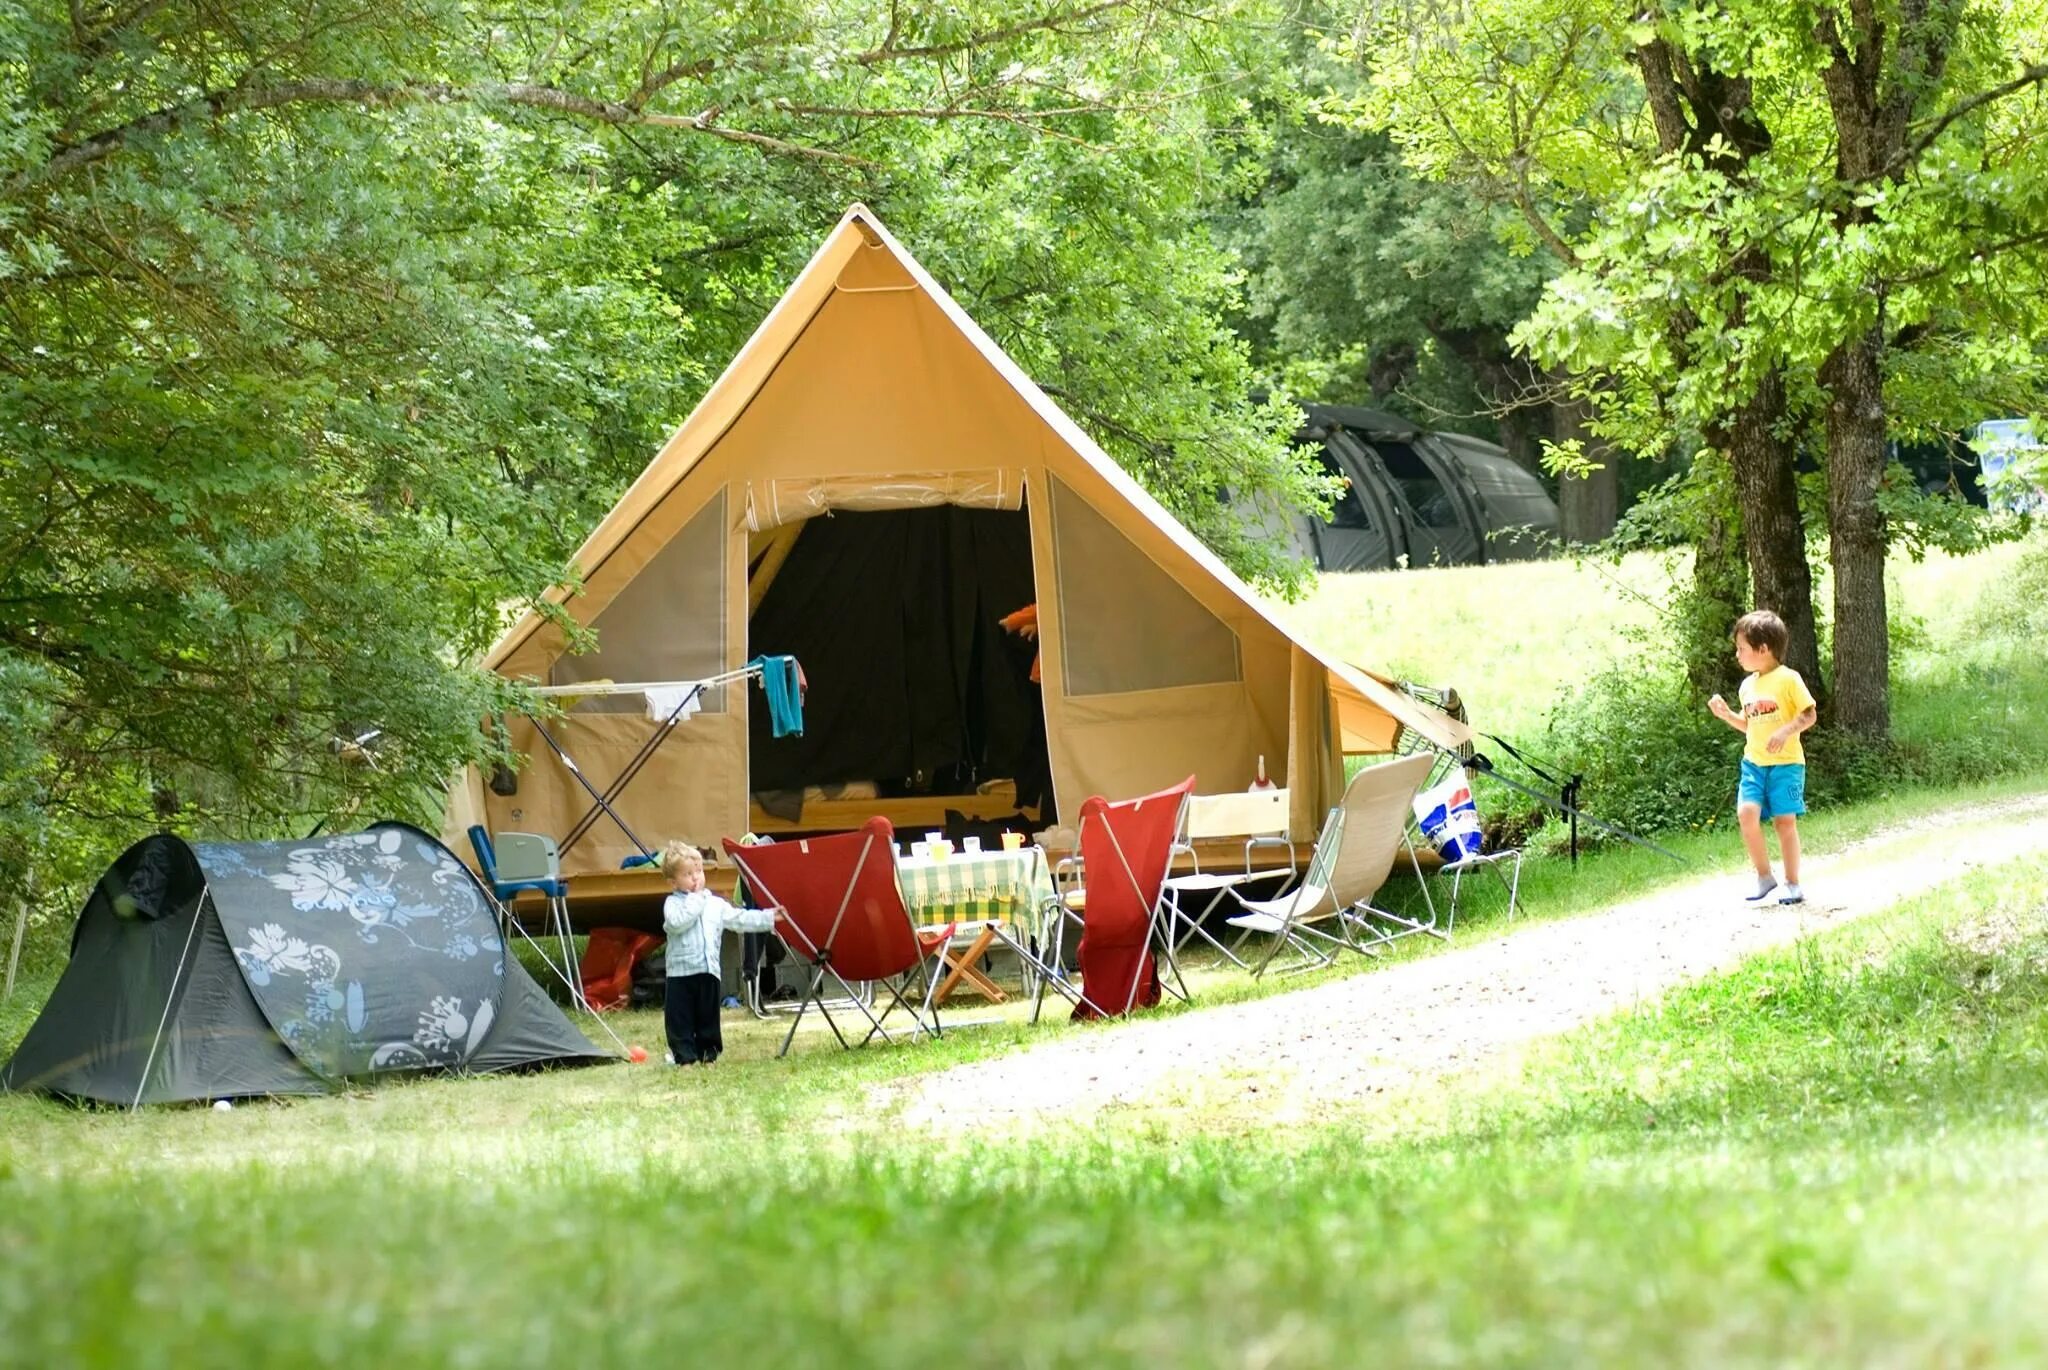 Camp go camping перевод. Лагерь кемпинг Молдова. Кемпинг бивуак Терскол. Alakol Camp кемпинг. Лагерь модульный (шатер и 2 палатки) Nash Base Camp.